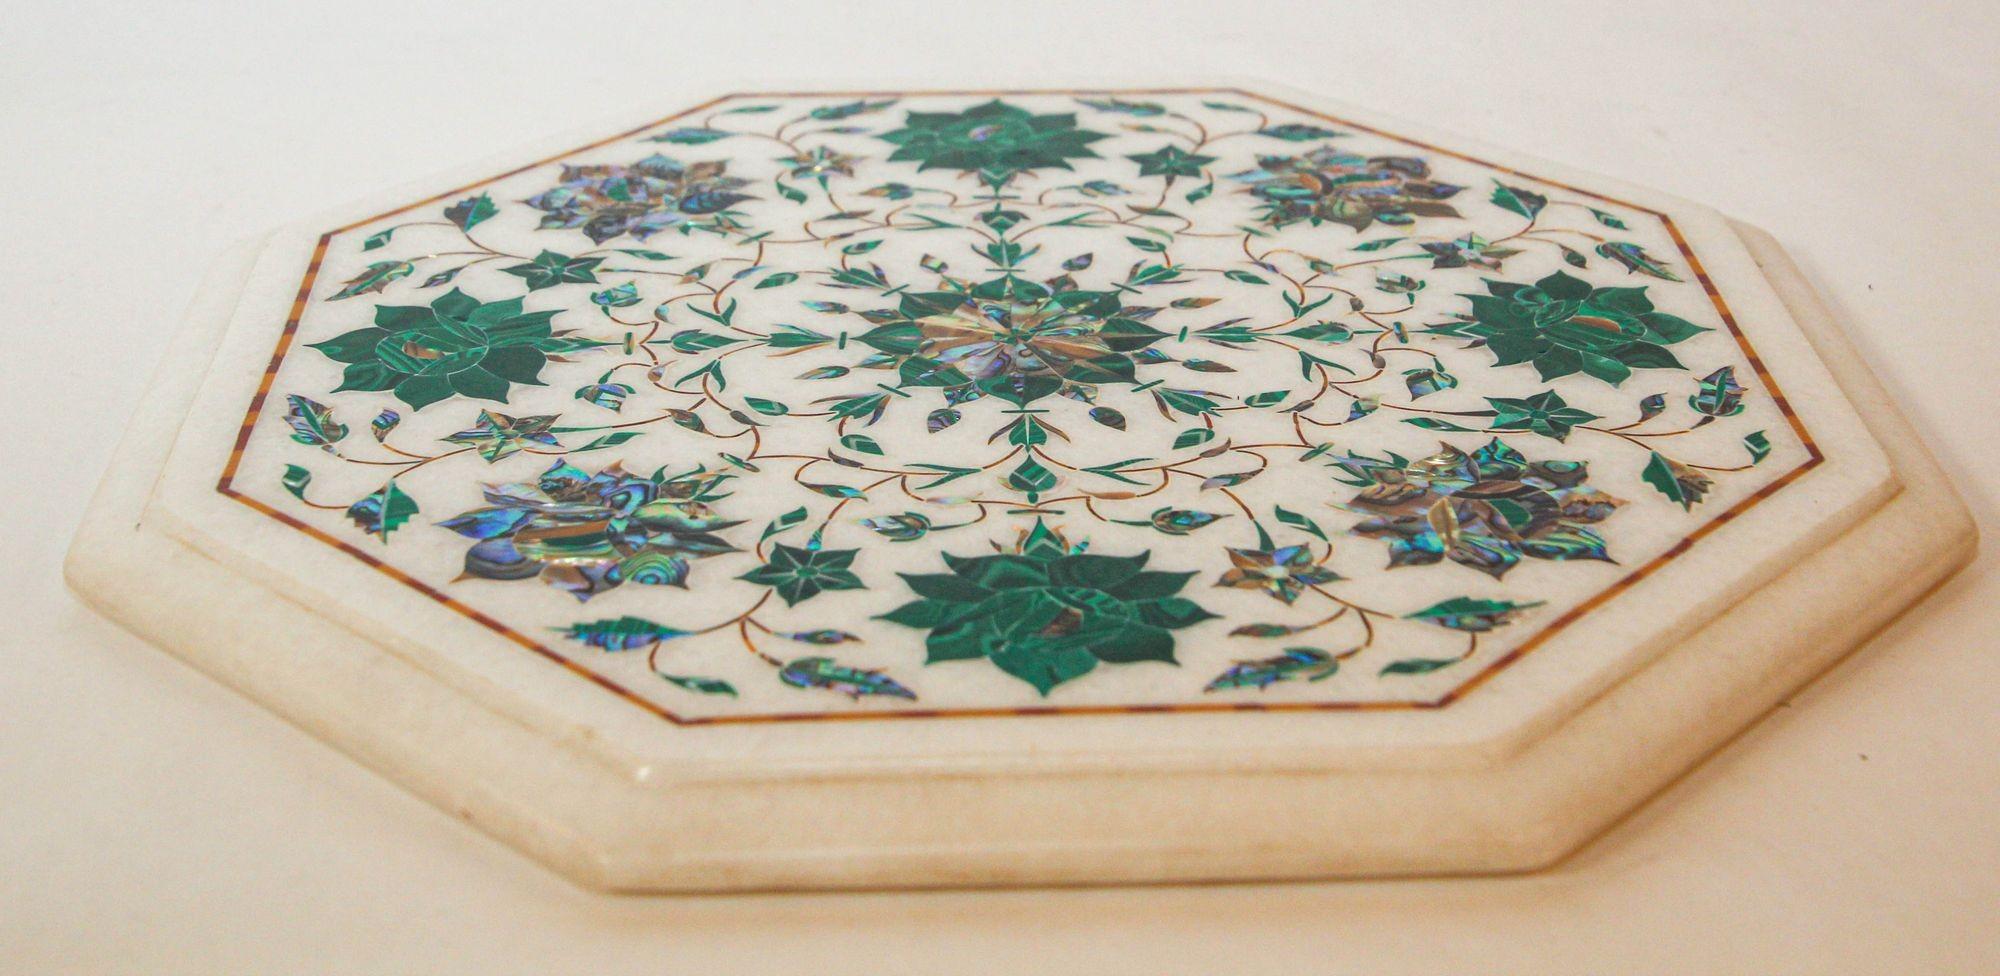 Handgefertigtes Pietra Dura Marmor Inlay Mosaik achteckige Platte oder Tablett Agra Indien.
Mughal-Stil Pietra Dura weißer Marmor Blumenmotiv Intarsien Marmortablett Rajasthan Indien.
Klassische Tischplatte aus weißem Marmor mit Mosaikintarsien aus